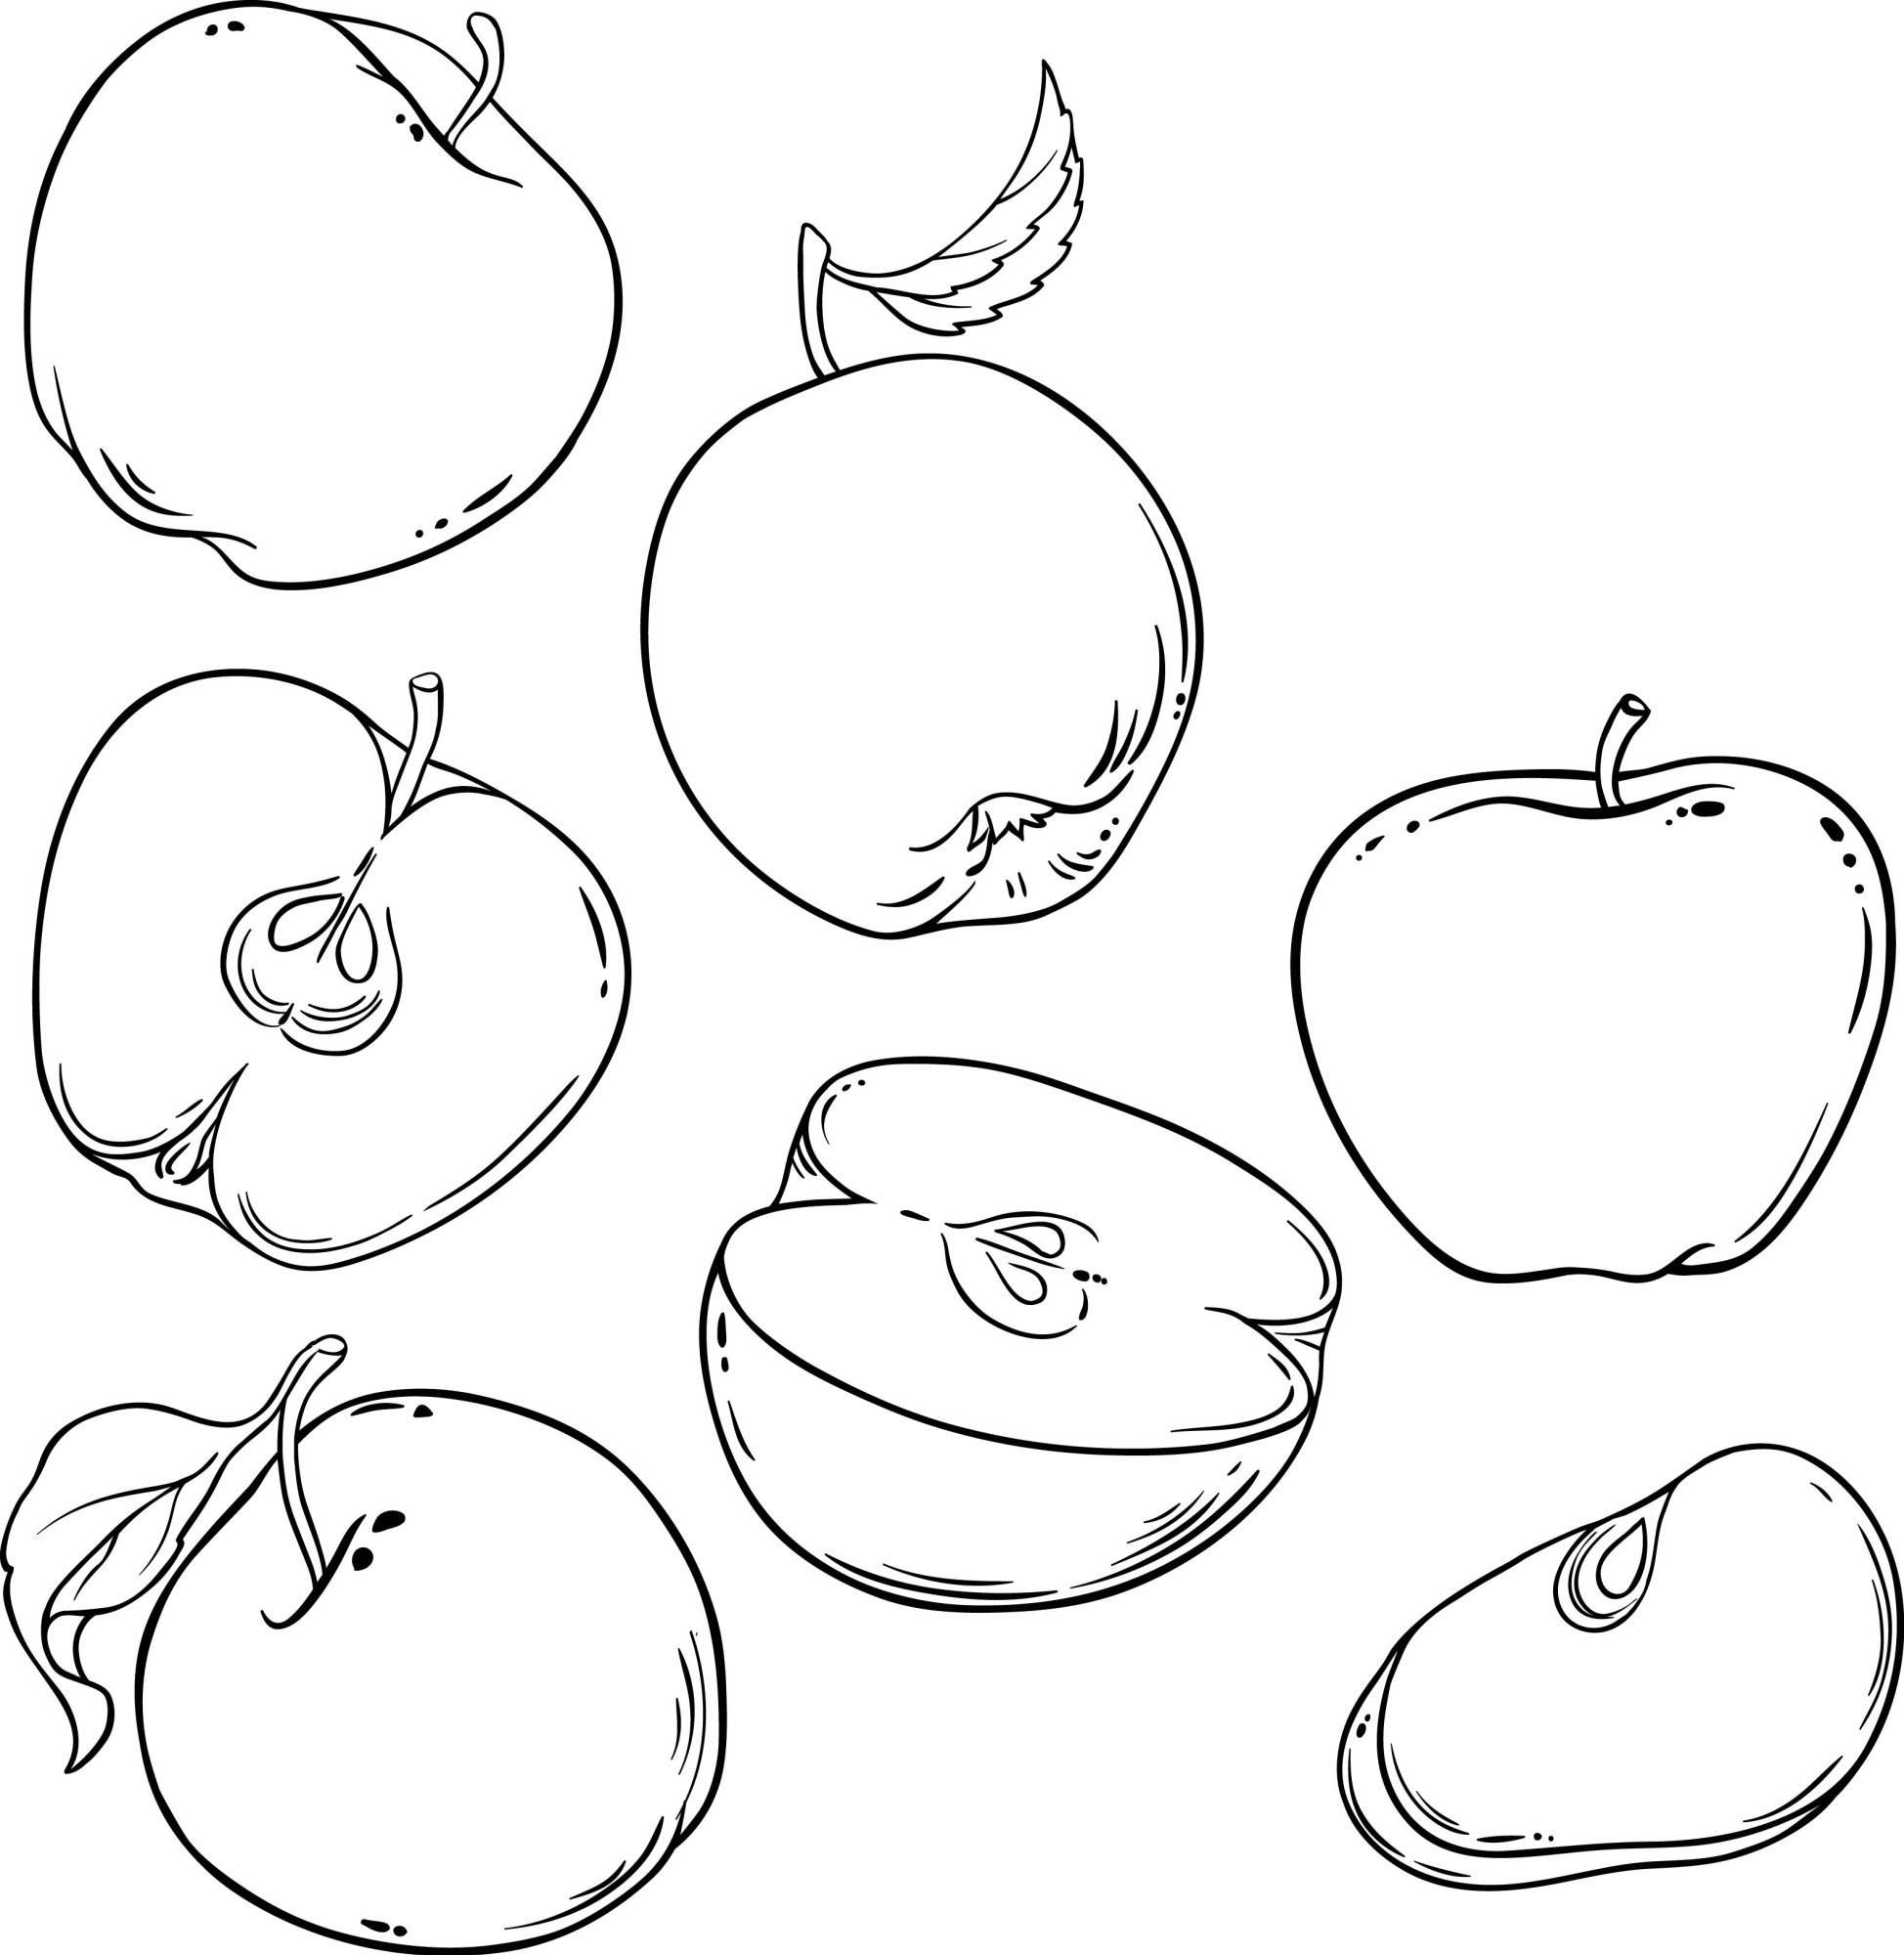 Раскраска для детей: набор свежих яблок с половинками